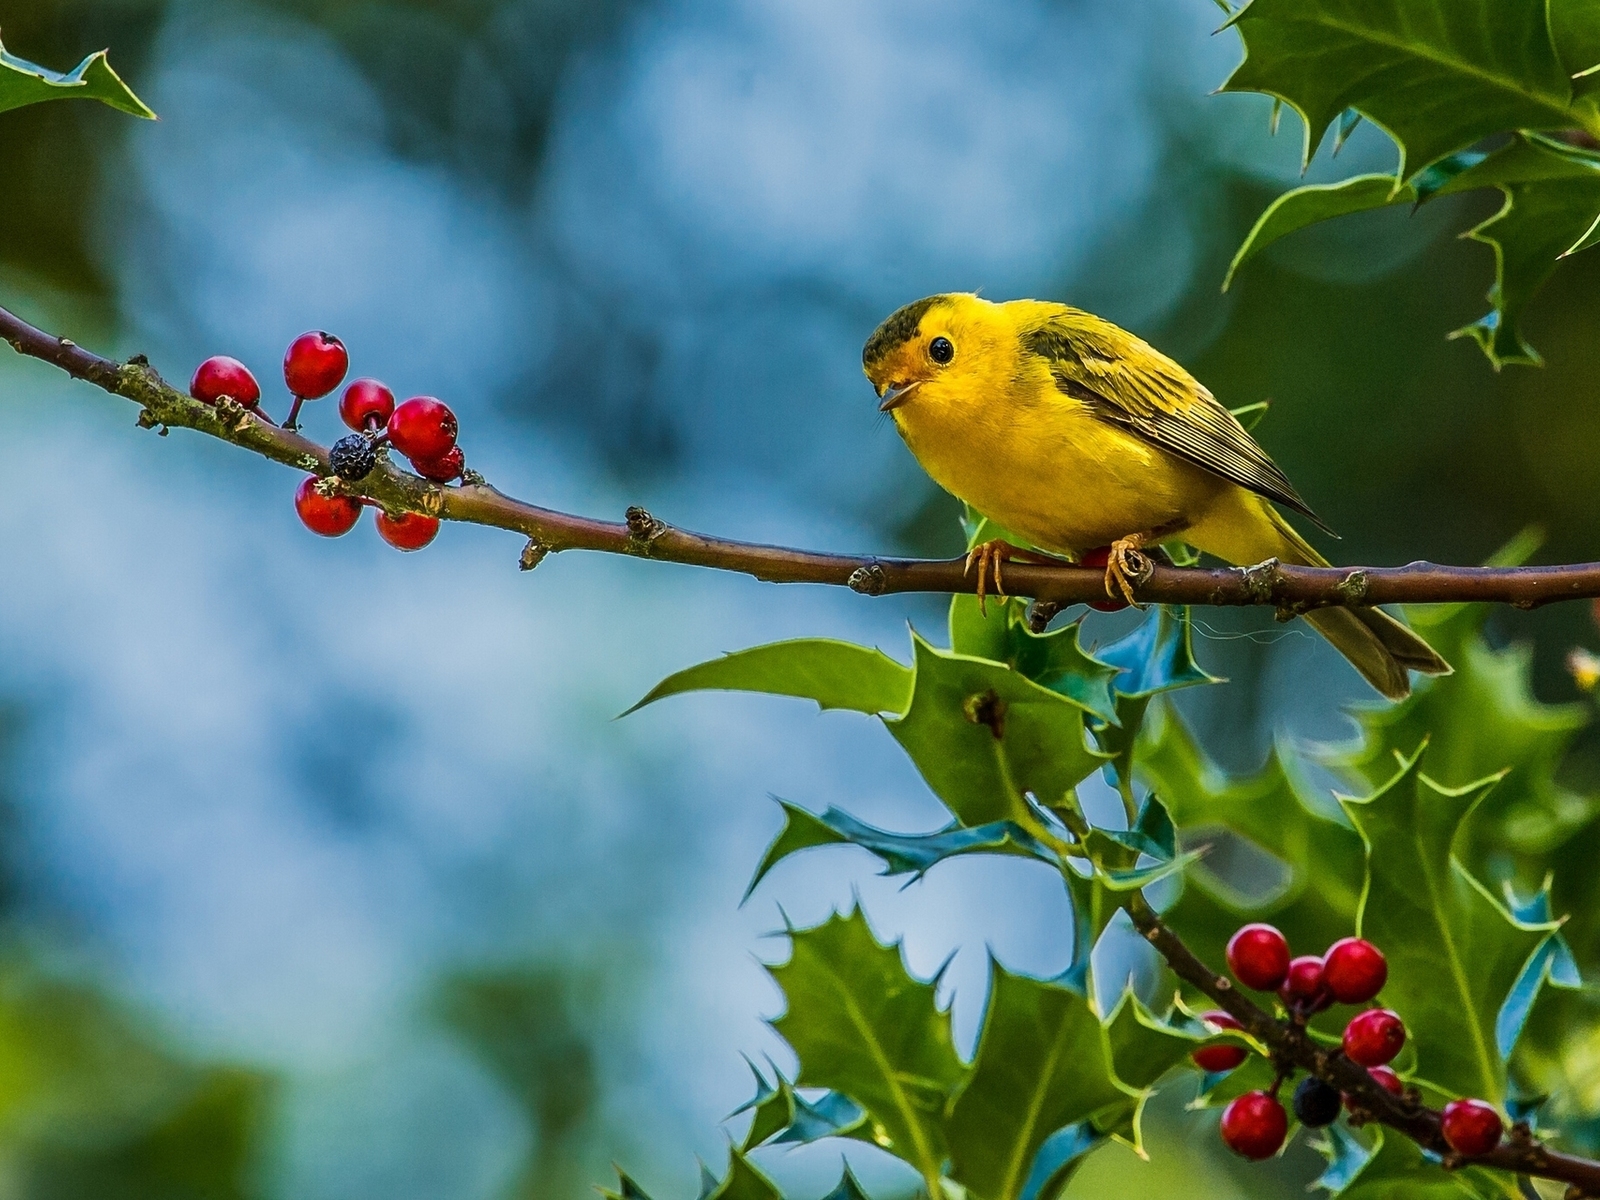 Cute Little Yellow Bird for 1600 x 1200 resolution